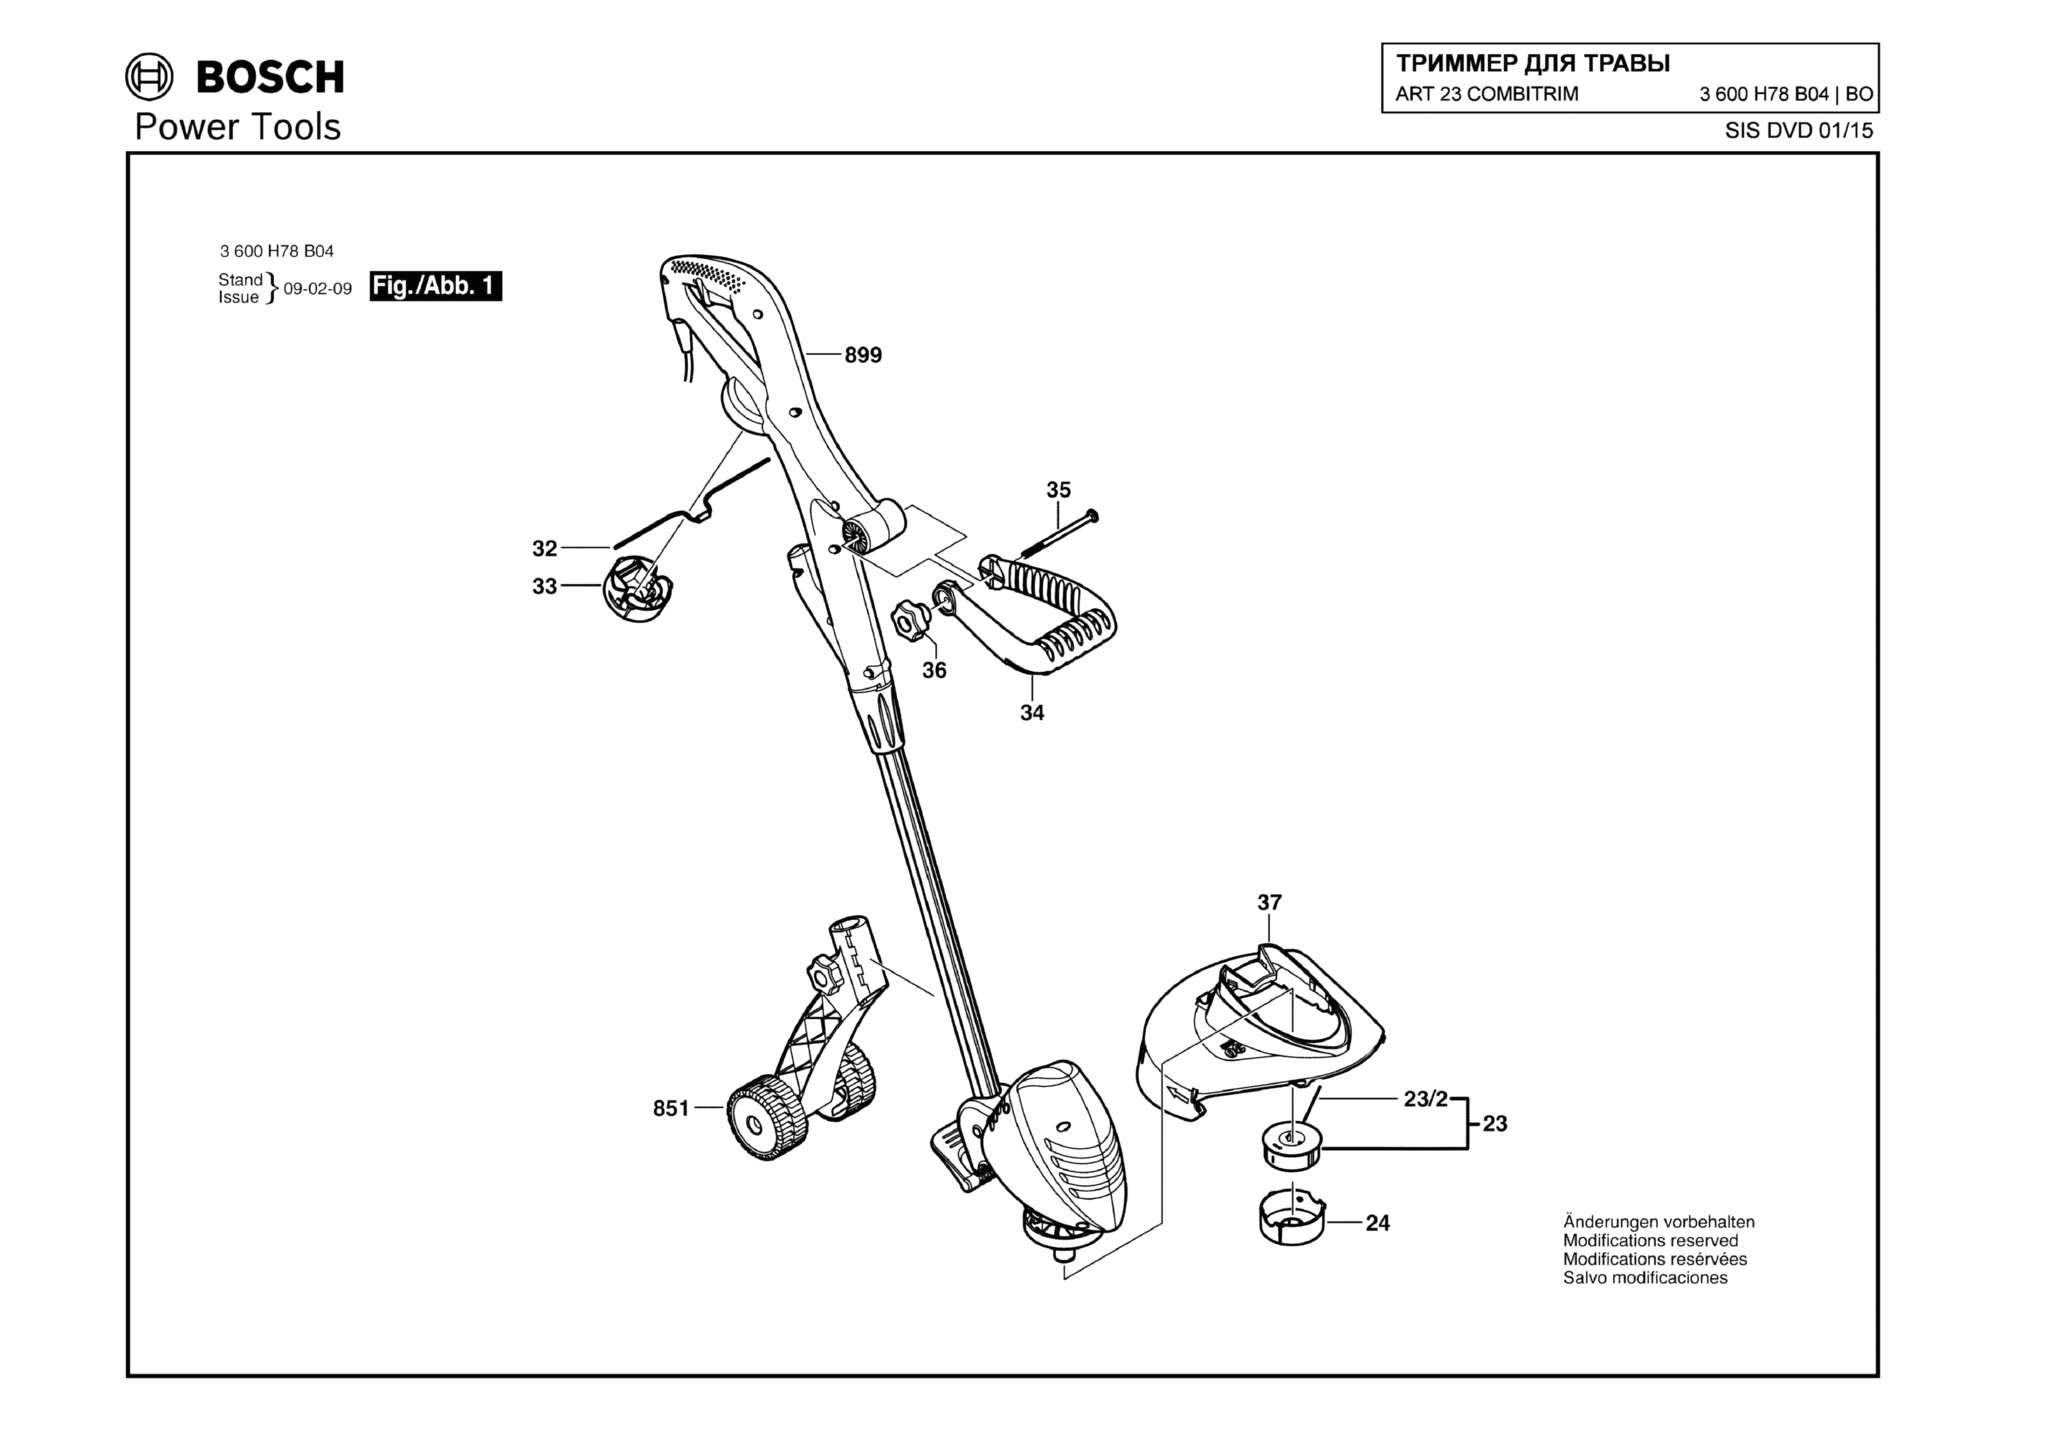 Запчасти, схема и деталировка Bosch ART 23 COMBITRIM (ТИП 3600H78B04)